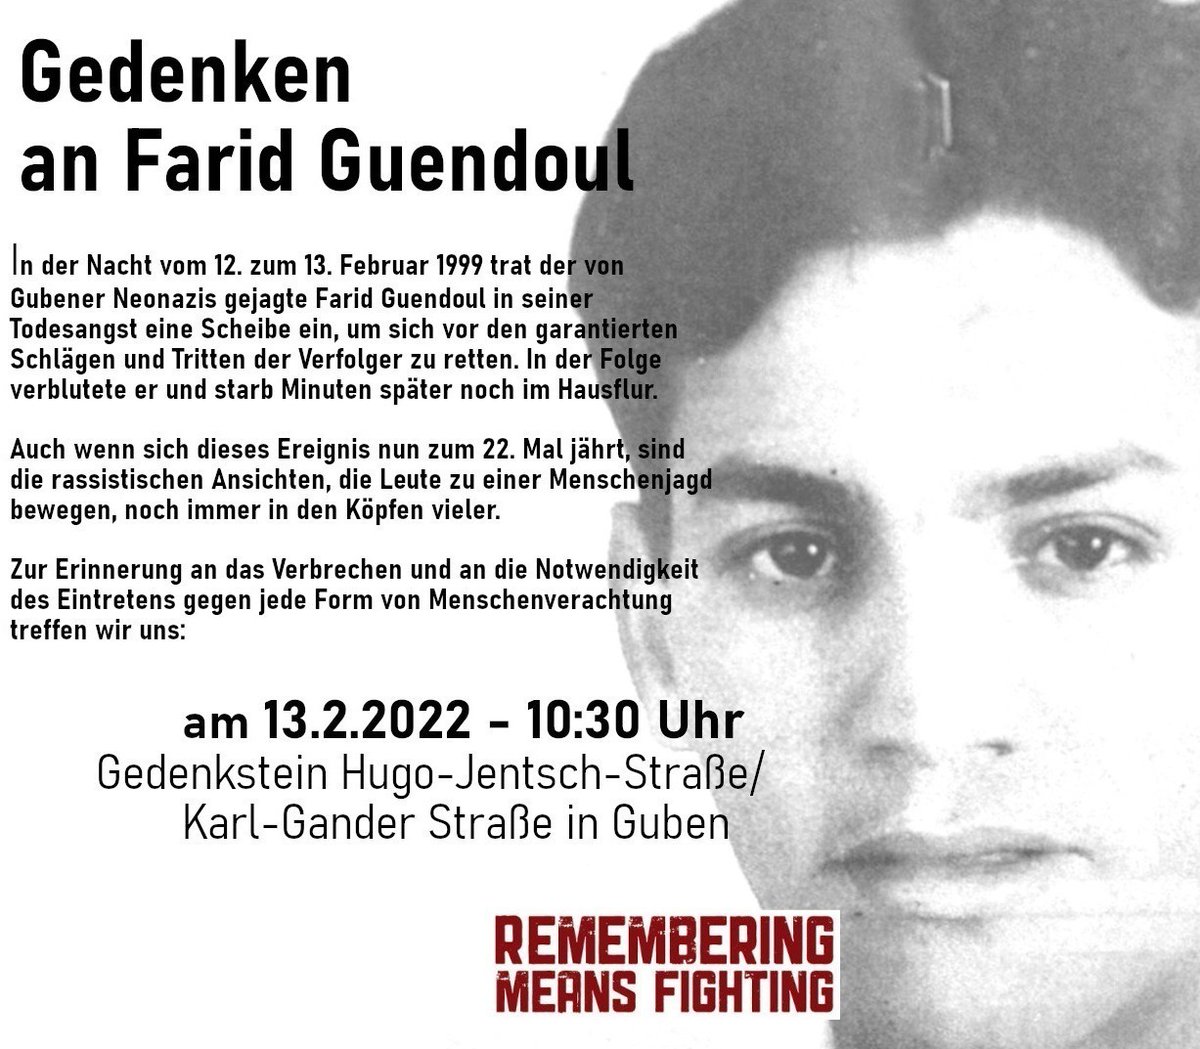 13.2.2022 um 10:30 Uhr, Gedenkstein Hugo-Jentsch-Straße/Karl-Gander Straße in #Guben. #gub1302
#rememberingmeansfighting 🕯
#dasproblemheißtrassismus✊🏾